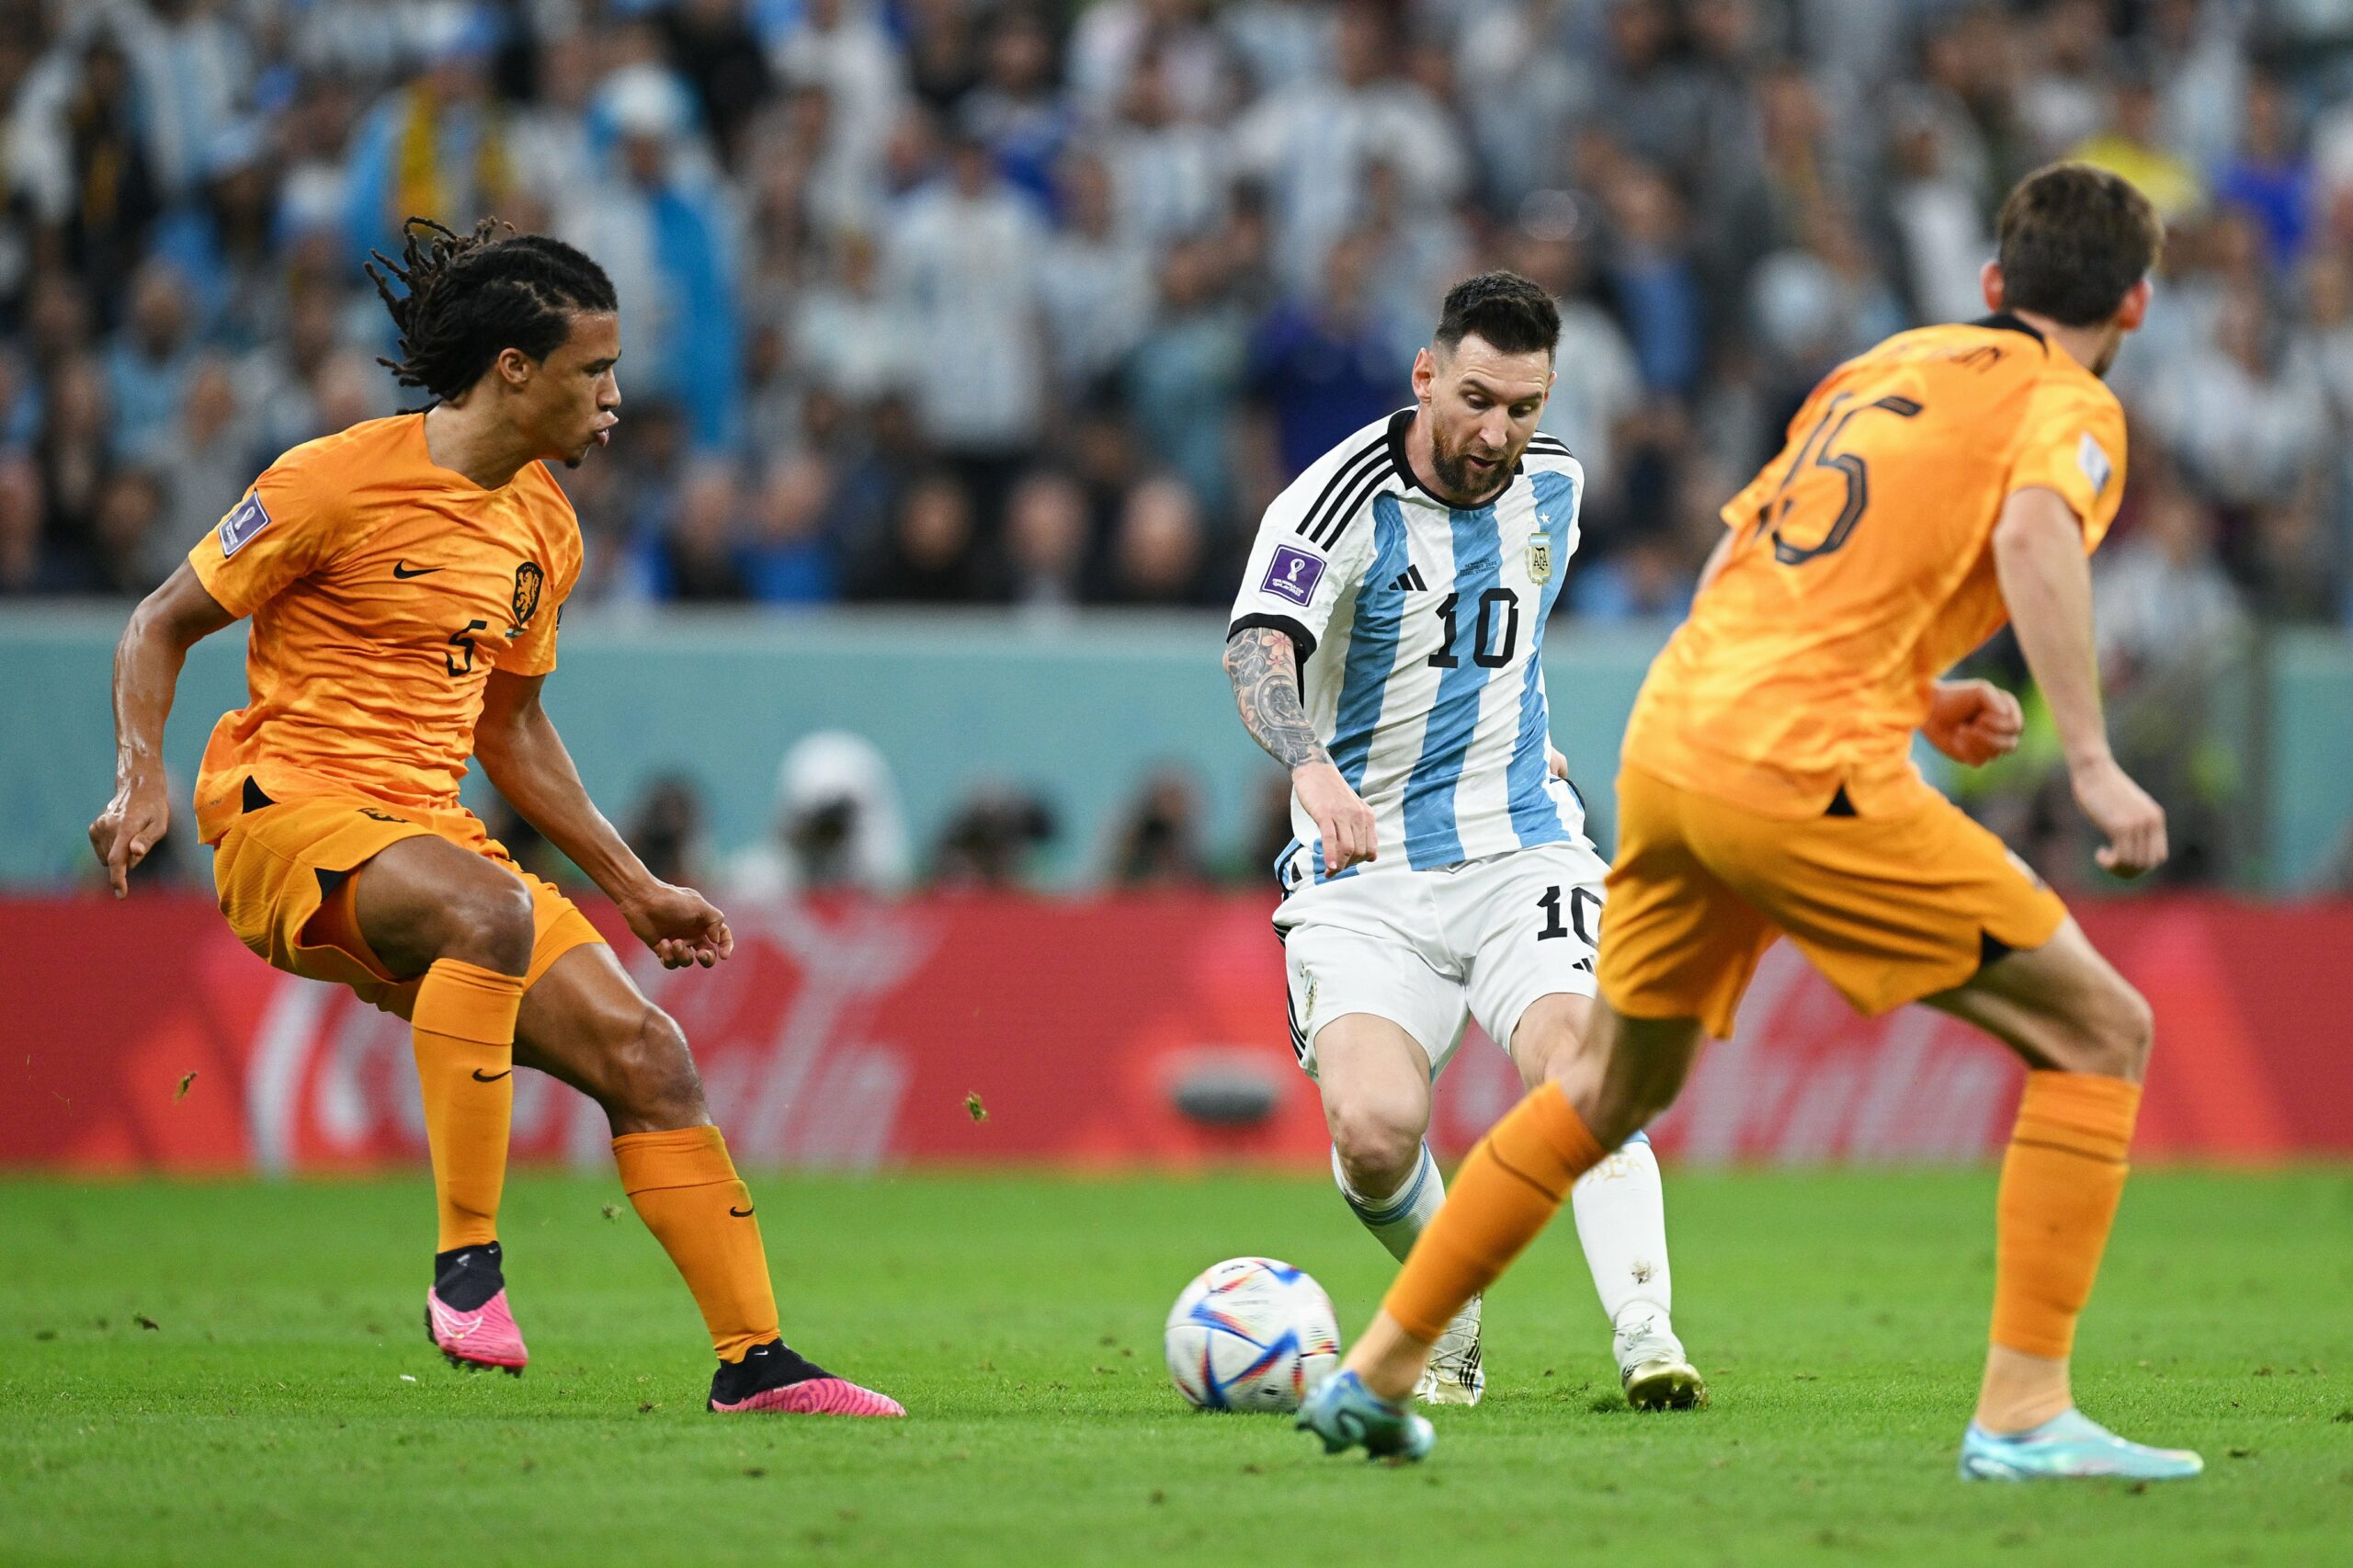 Leo Messi double la mise, l’Argentine mène désormais 2-0 contre les Pays-Bas ! (vidéo)